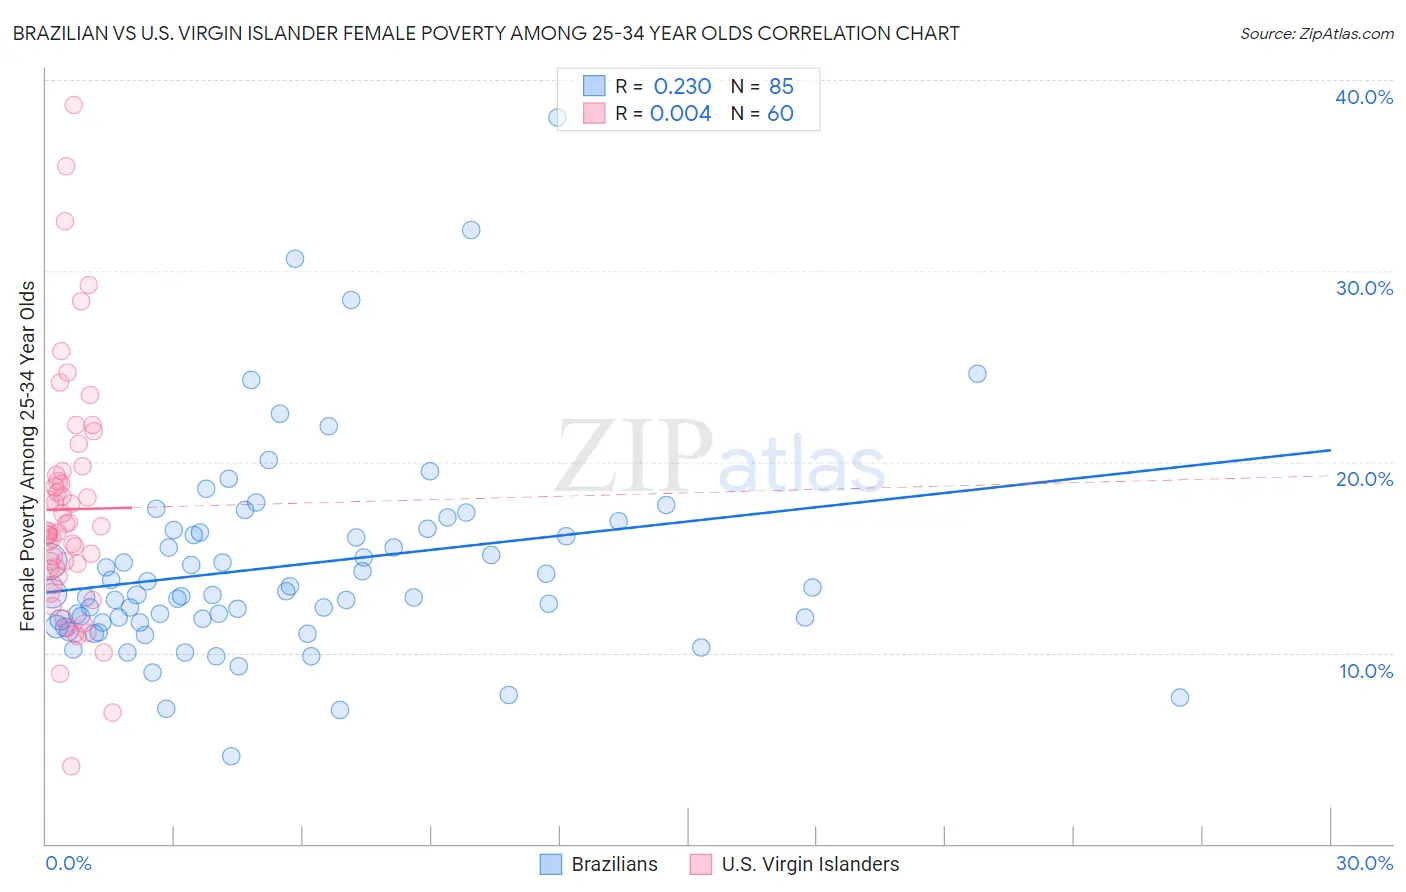 Brazilian vs U.S. Virgin Islander Female Poverty Among 25-34 Year Olds